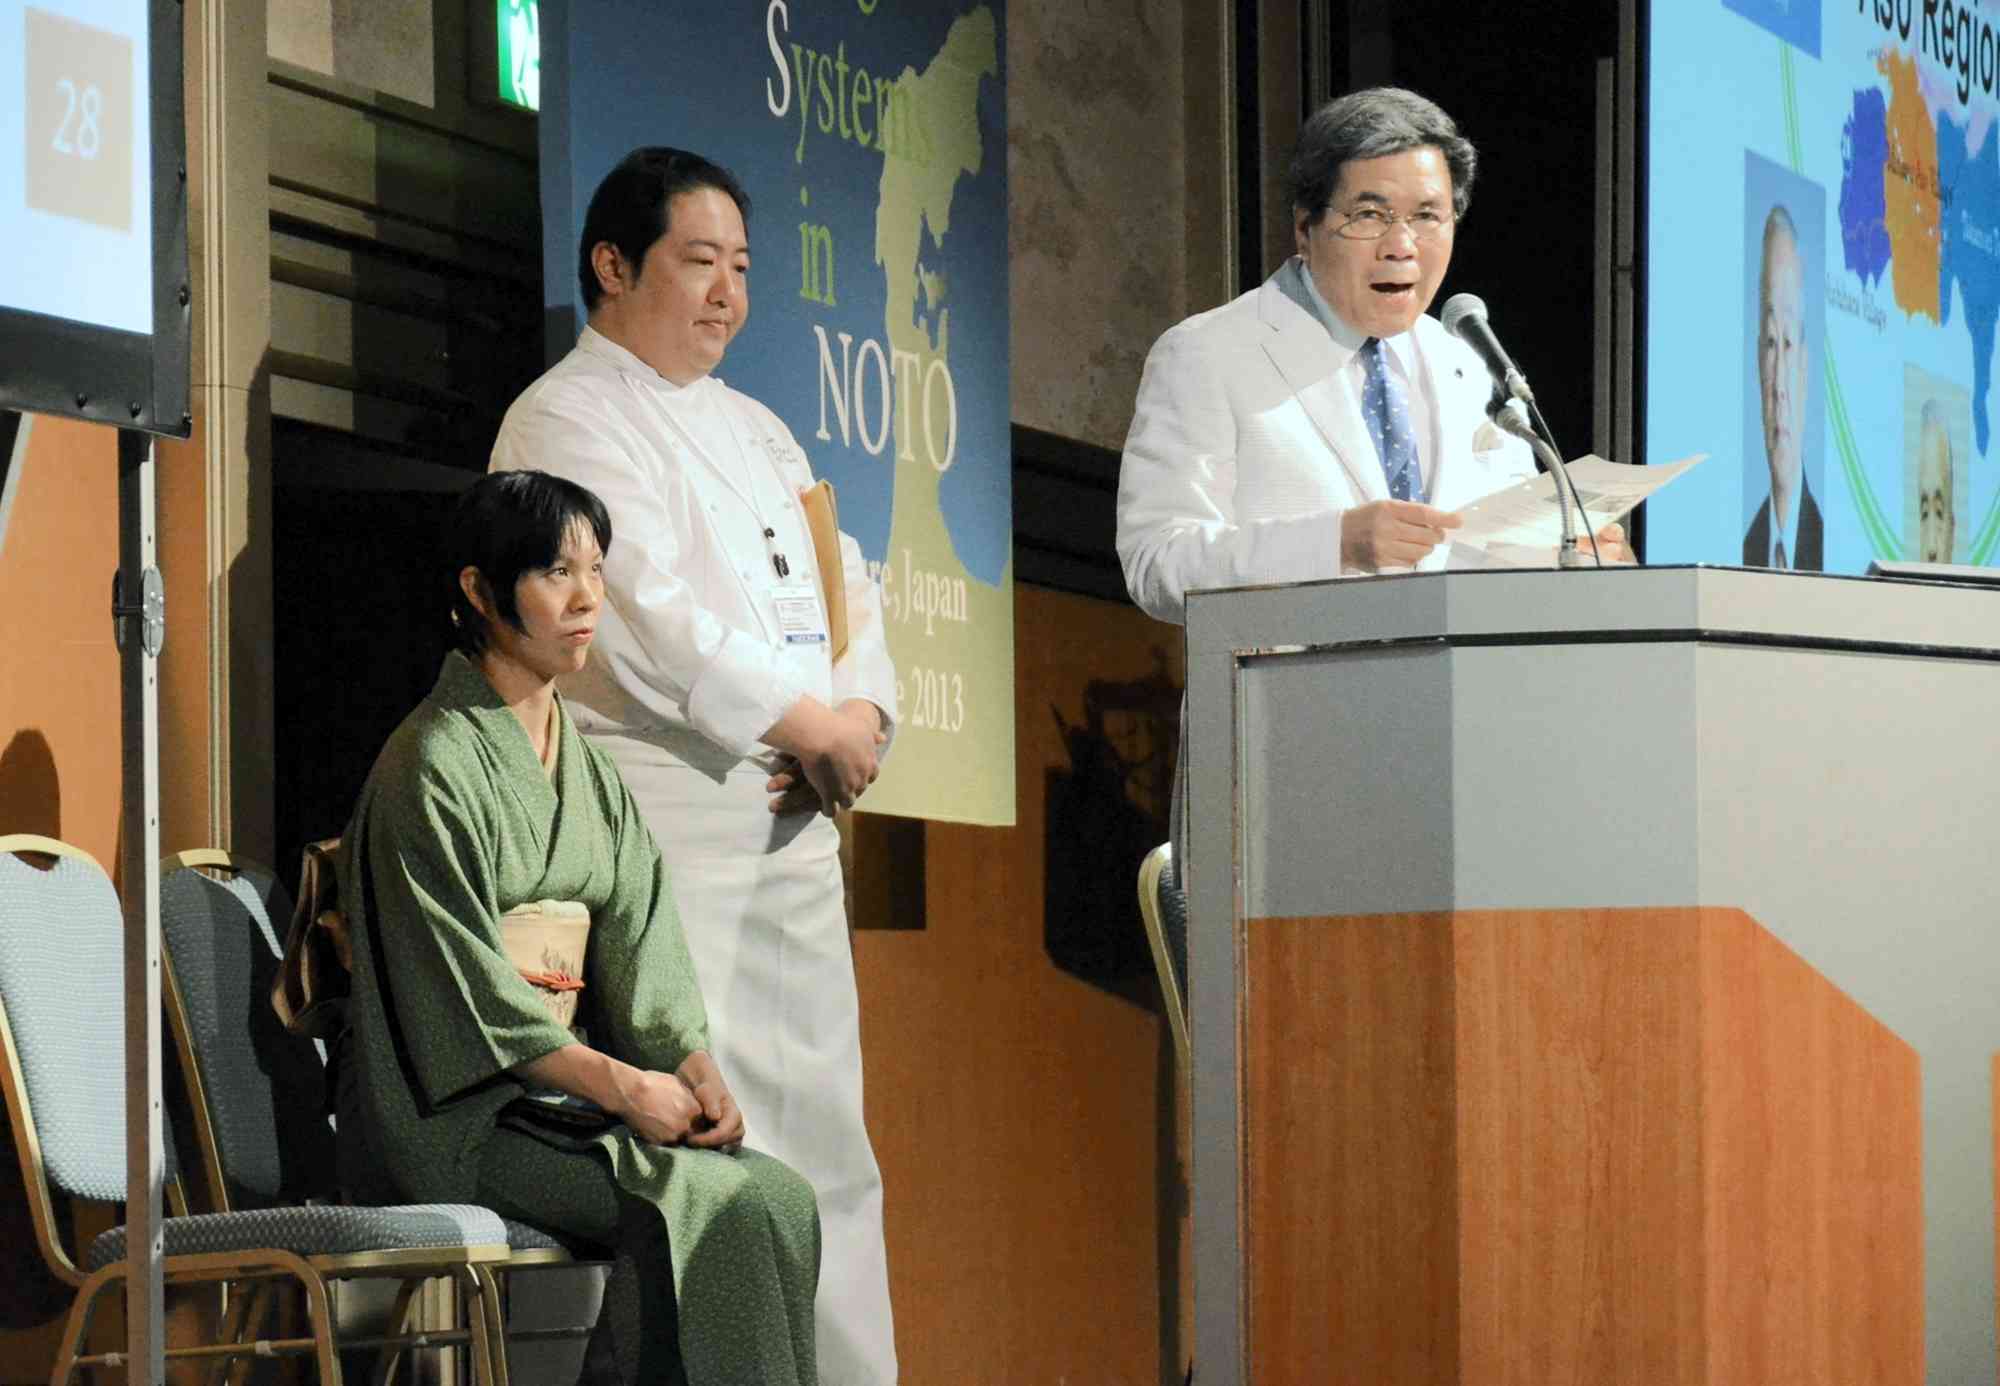 2013年に石川県で開かれた国際会議で蒲島郁夫知事、宮本健真さんとプレゼンテーションをする